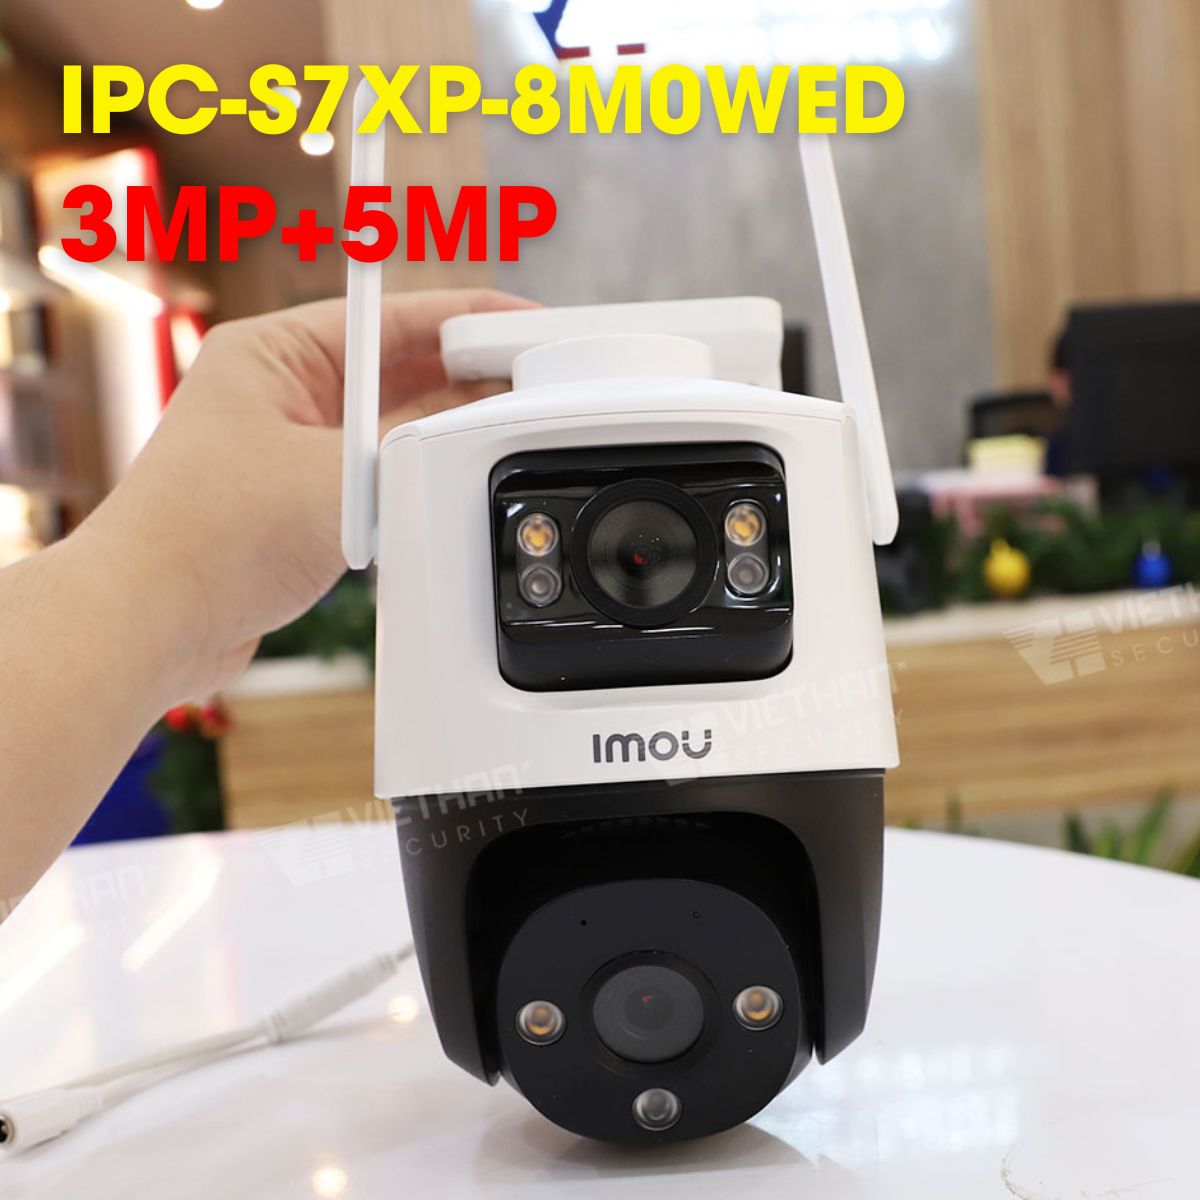 Camera Ranger Dual 8MP IMOU IPC-S7XP-8M0WED 3MP+5MP hồng ngoại 30m, tích hợp mic và loa, còi báo động 110dB